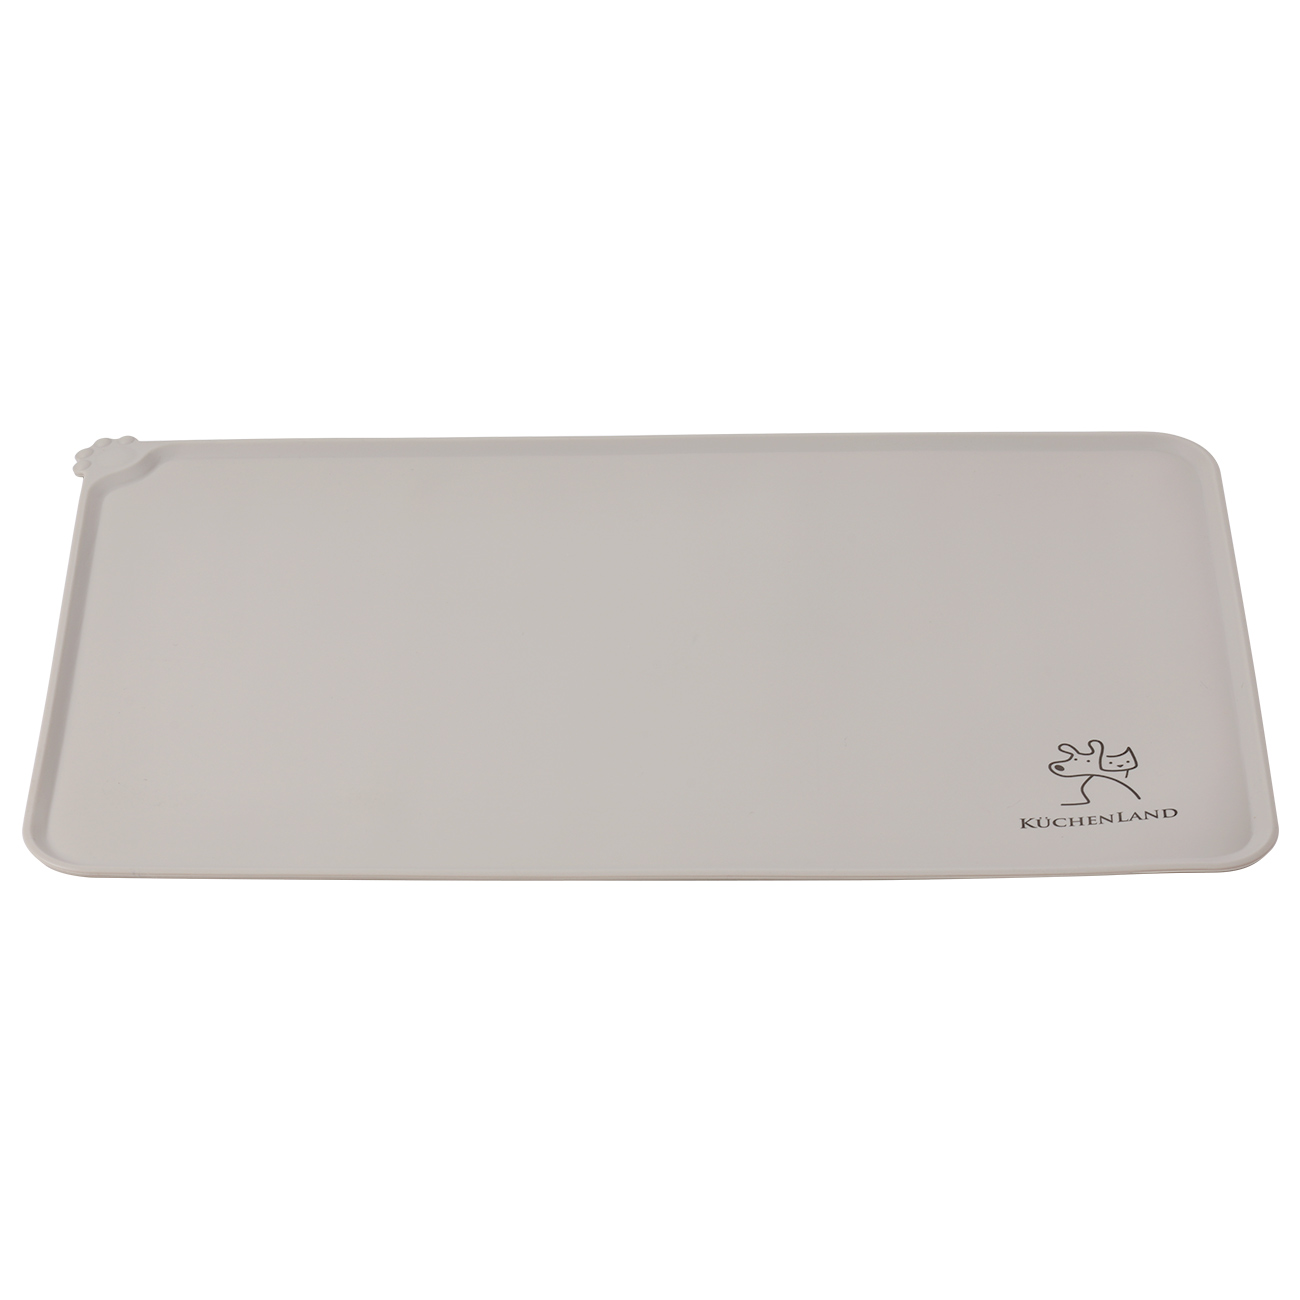 Pet bowl mat, 48x30 cm, silicone, gray-beige, Favorite pet изображение № 2